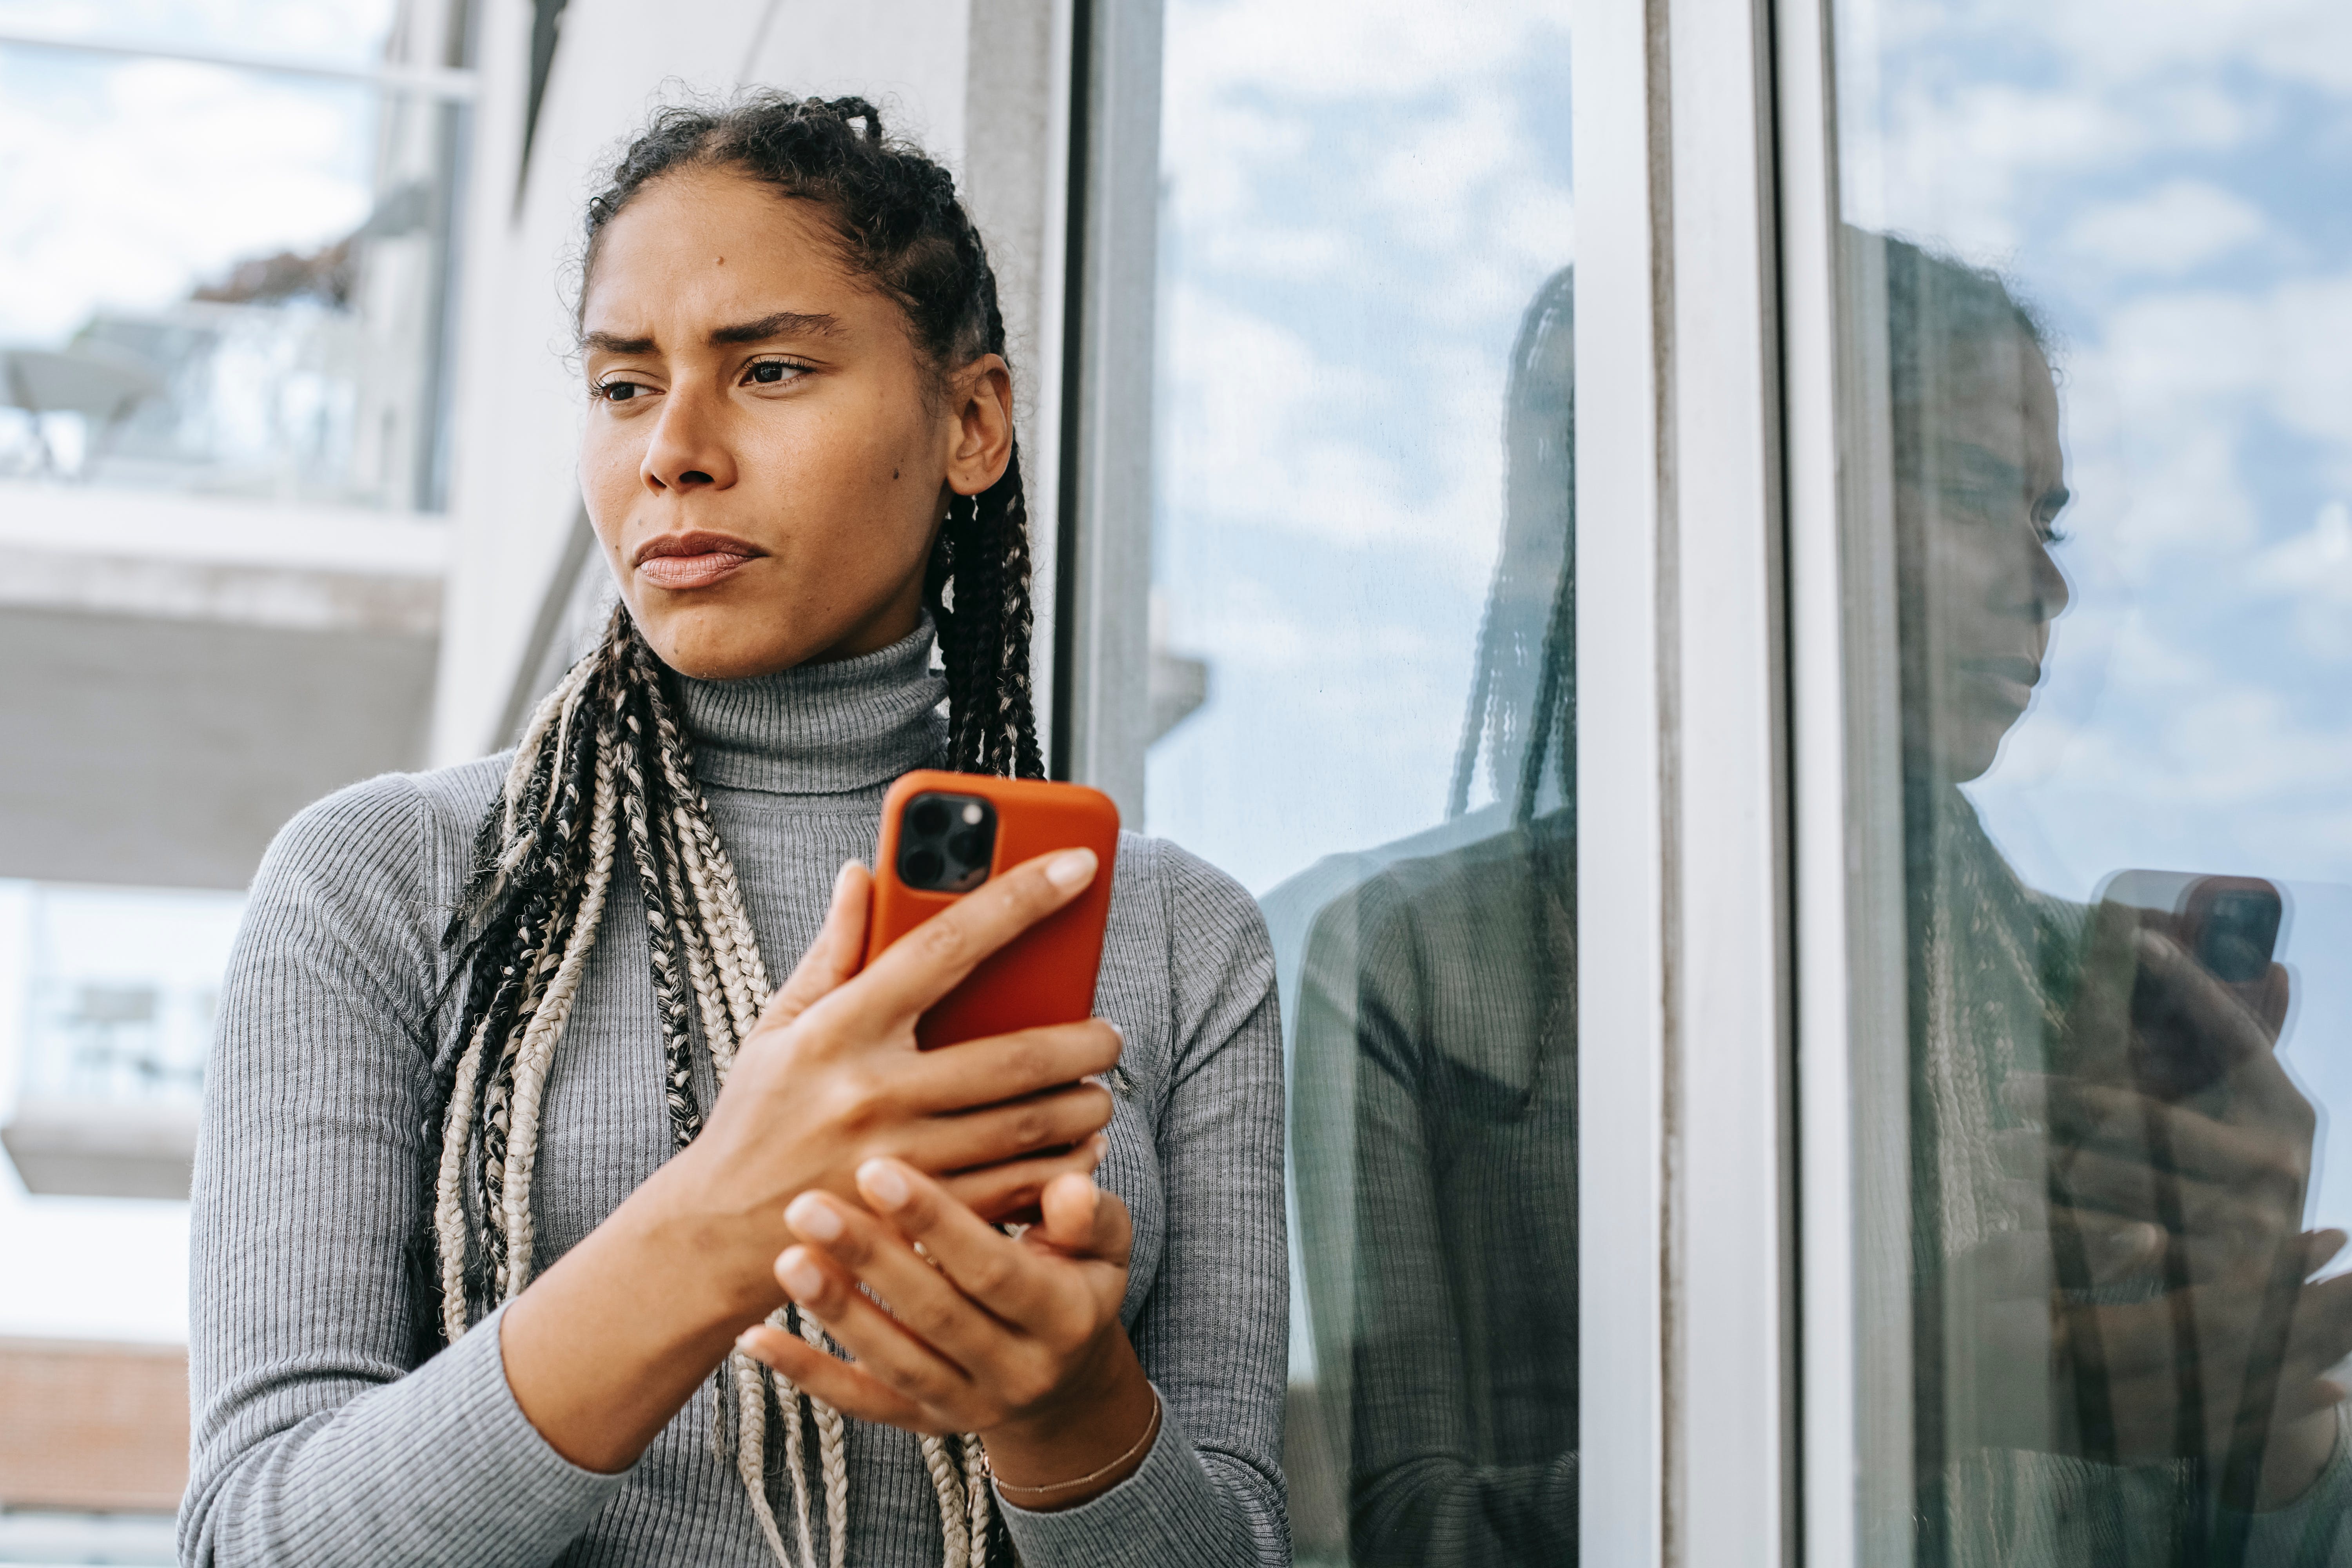 Une femme à l'air contrarié regarde dehors tout en tenant un téléphone | Source : Pexels